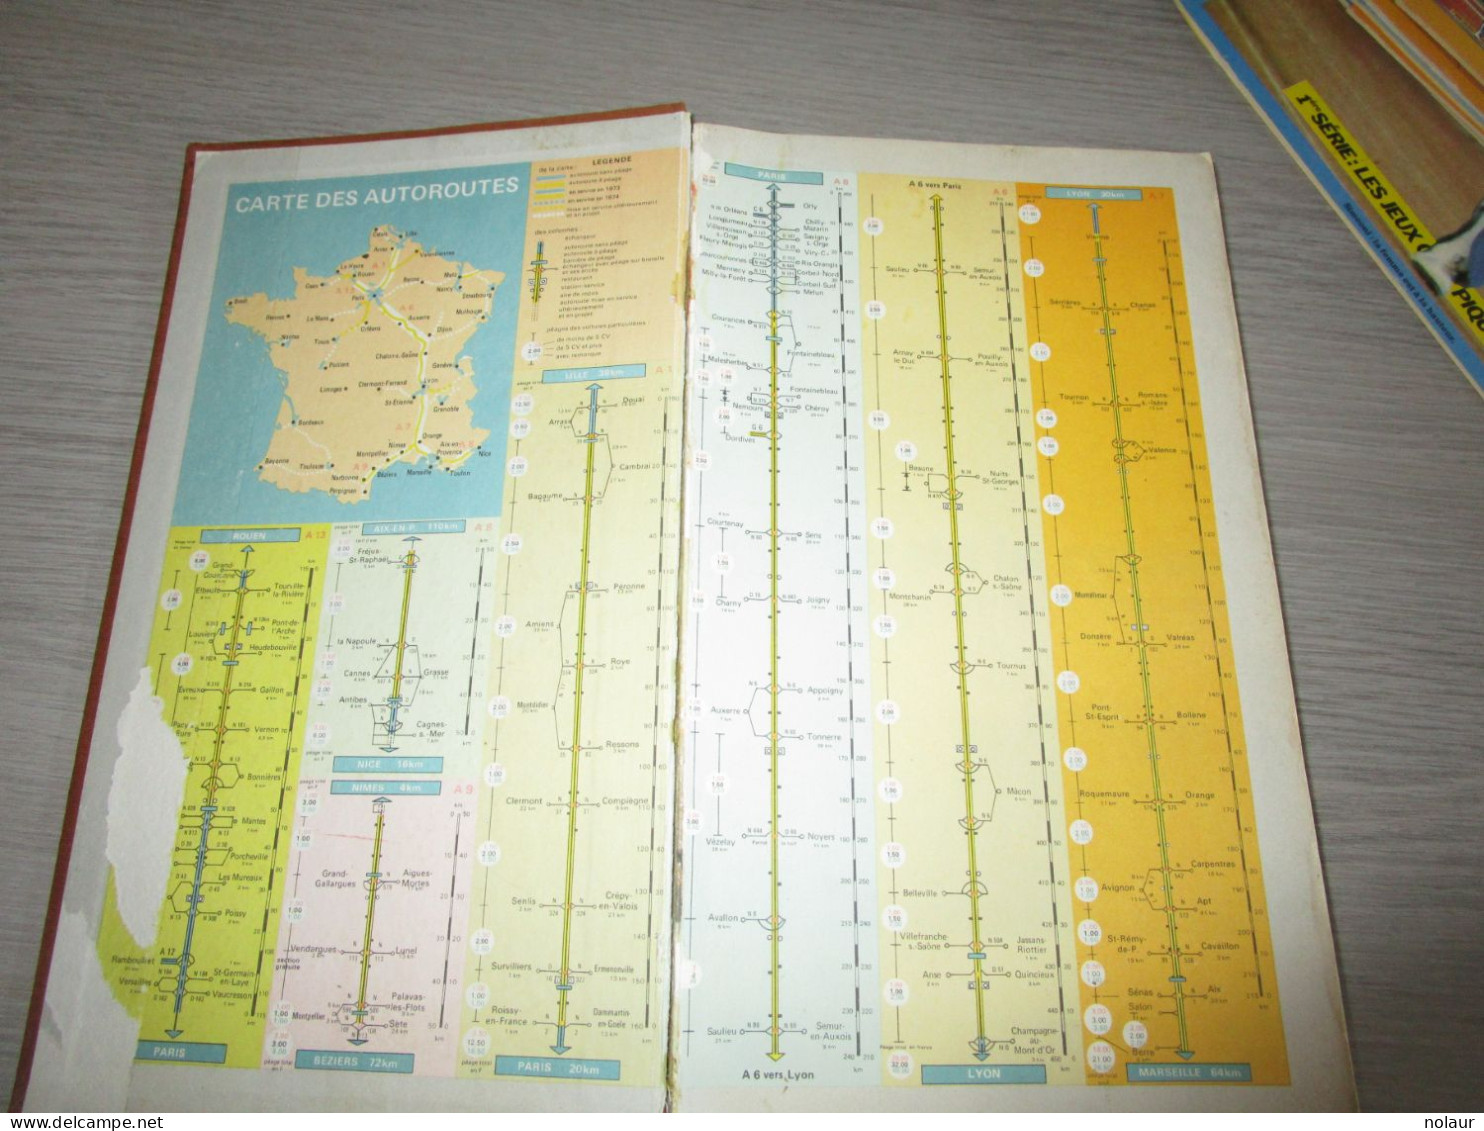 Guide De La Route France, Belgique, Suisse Année 1969 - Michelin (guide)